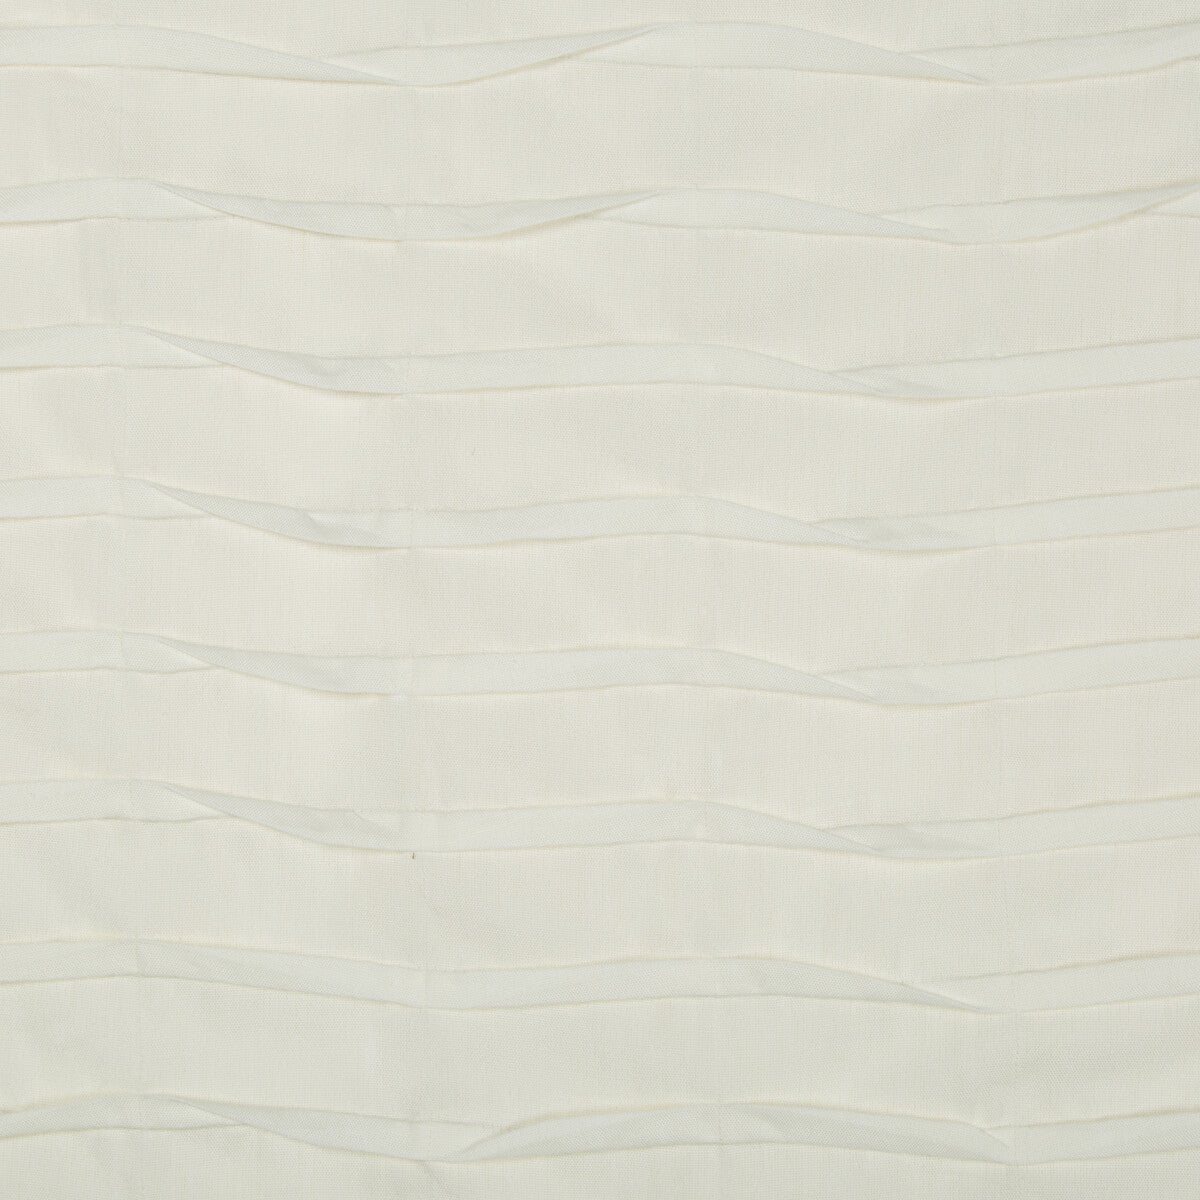 Kravet Basics fabric in 4334-1 color - pattern 4334.1.0 - by Kravet Basics